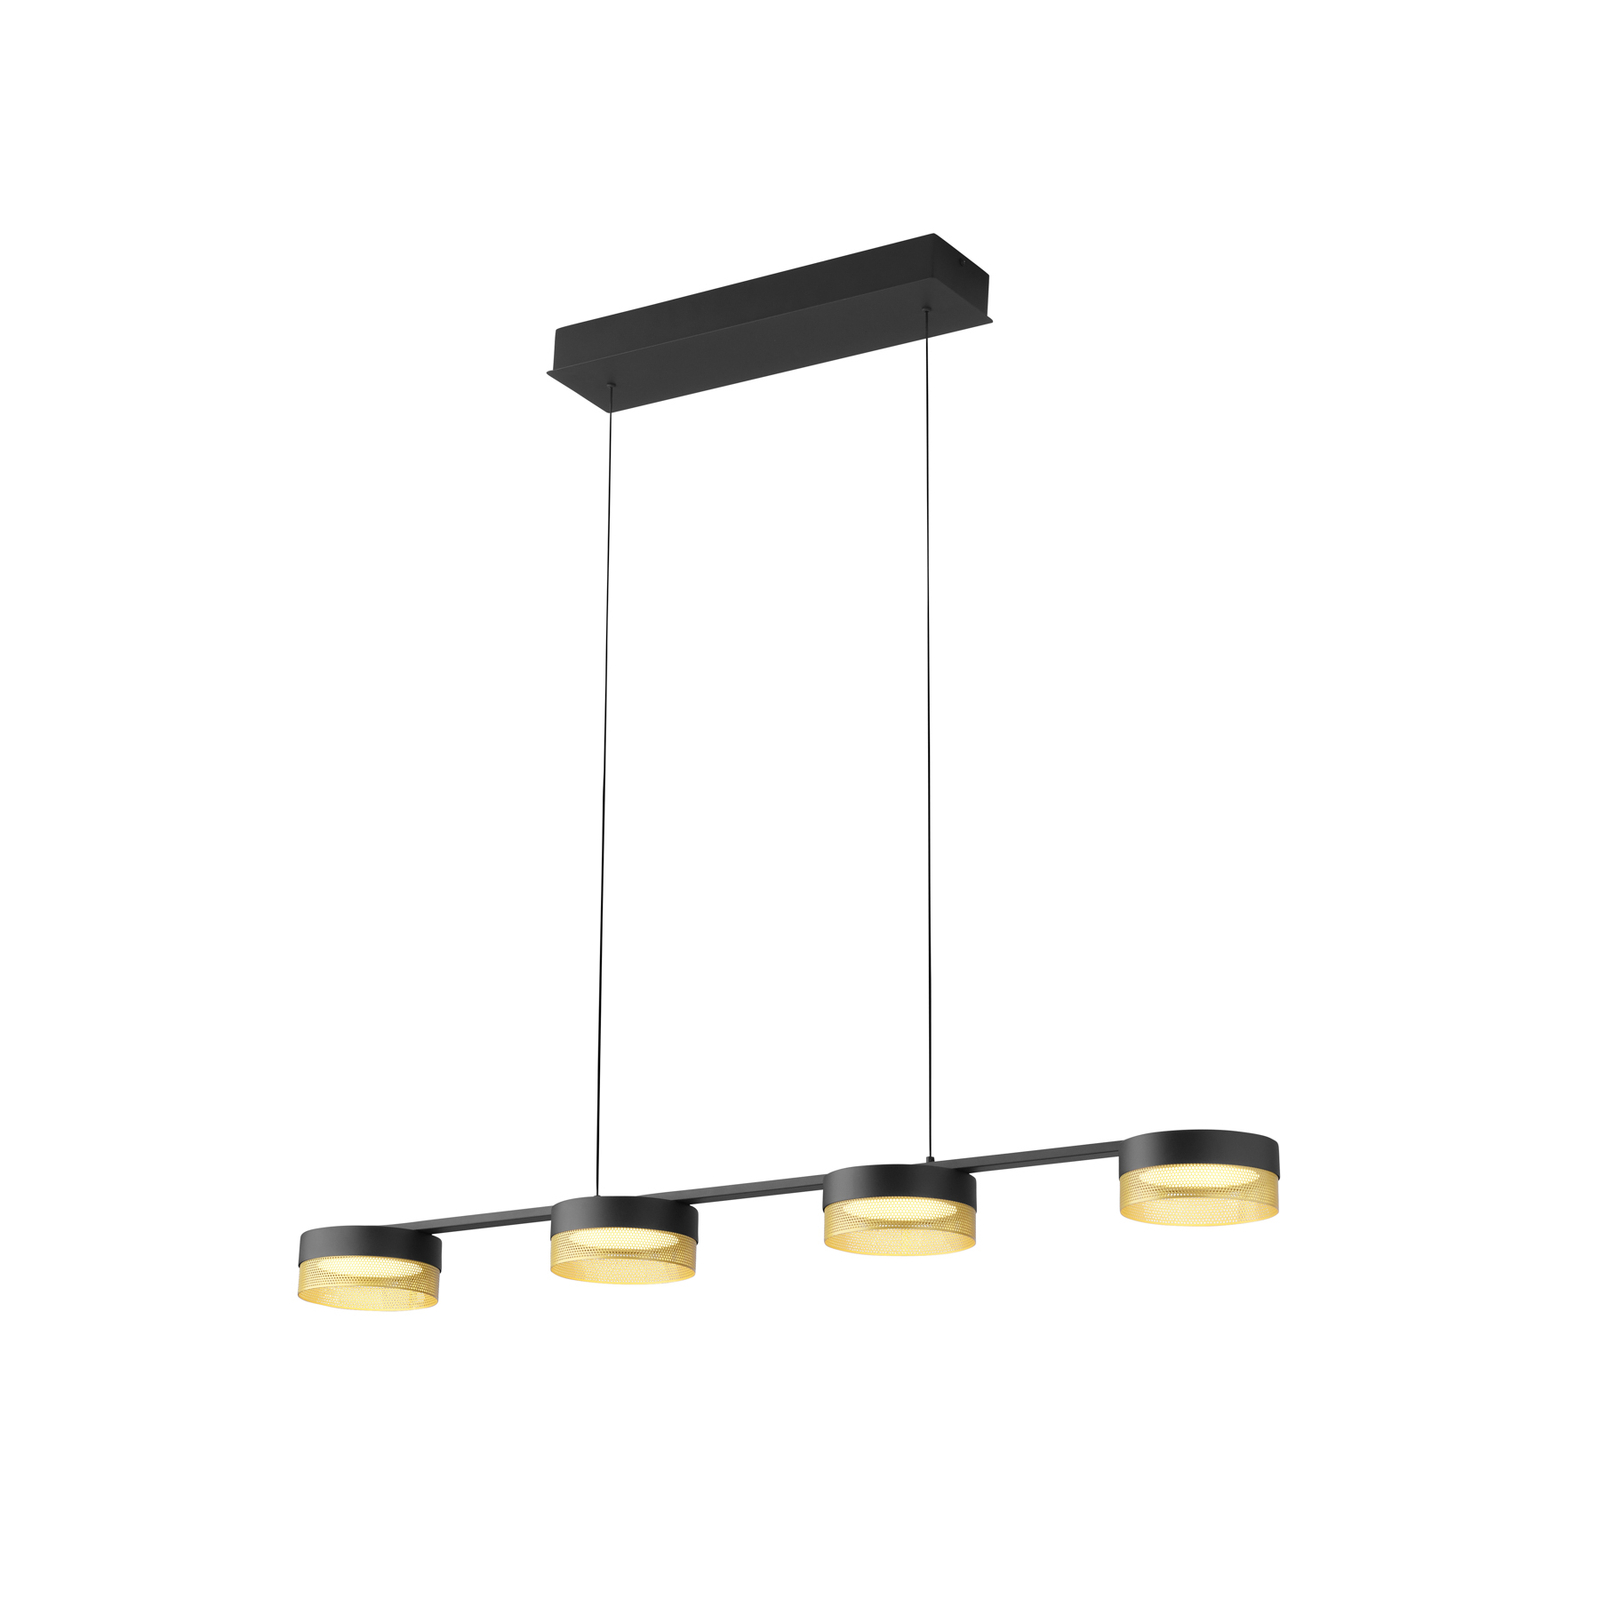 LED hanglamp Mesh 4-lamps dimmer, zwart/goud